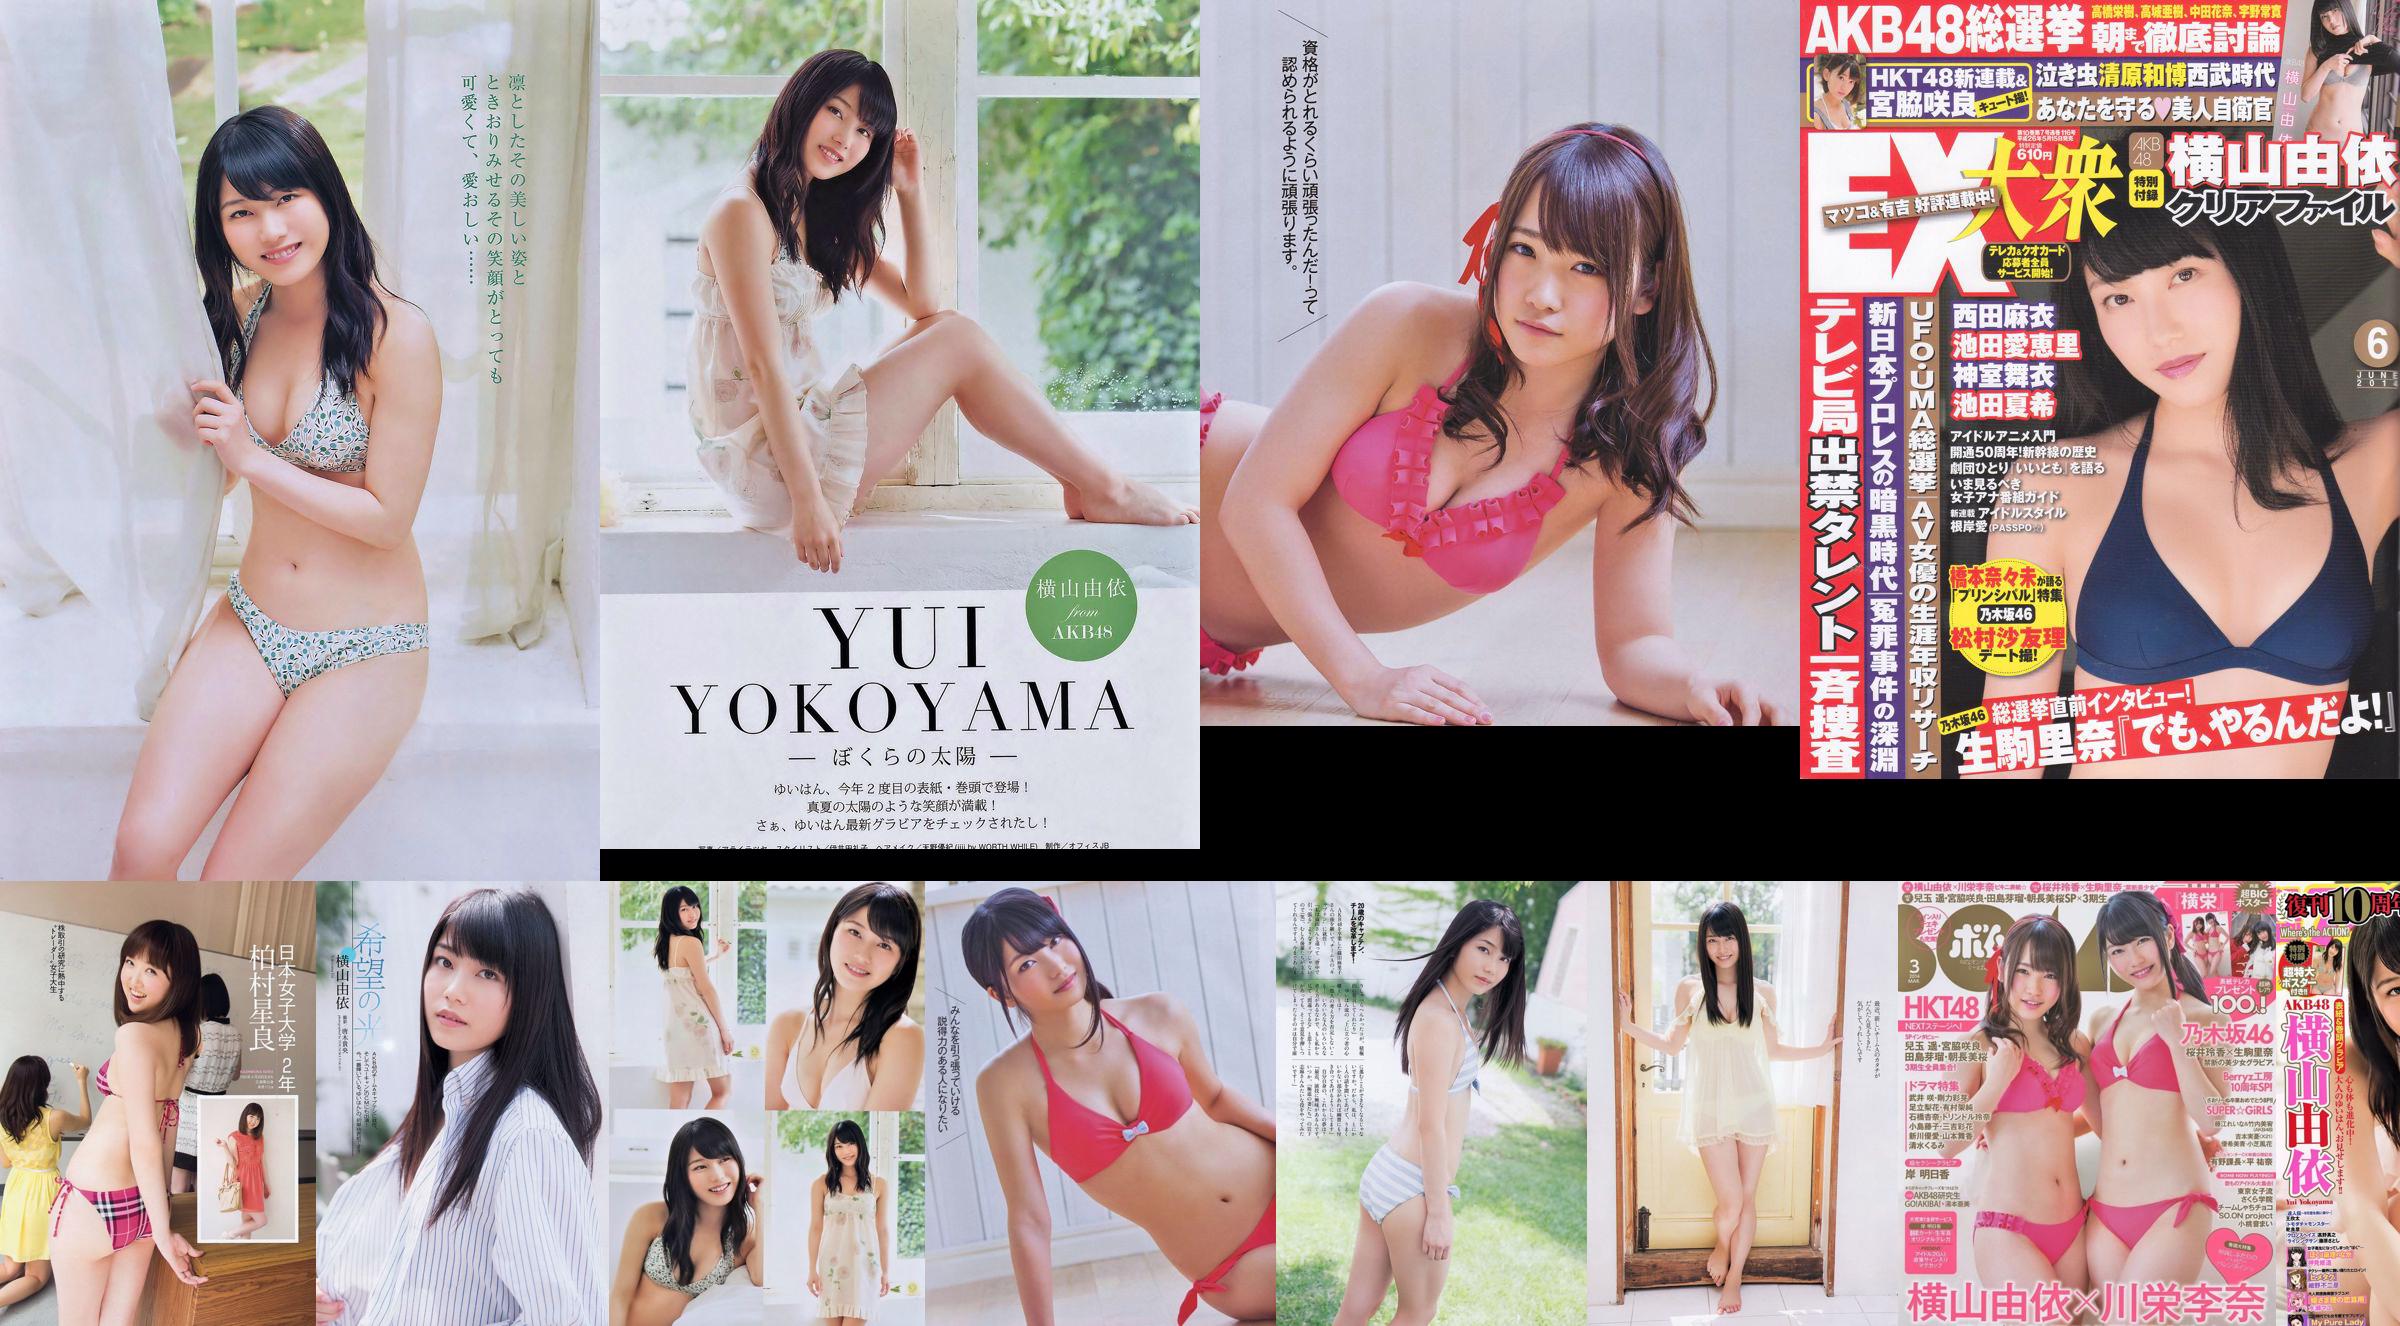 [EX Taishu] Yokoyama Yui, Miyawaki Sakura, Matsumura Sa Yuri 2014 No.06 Photo Magazine No.fcc293 Page 4